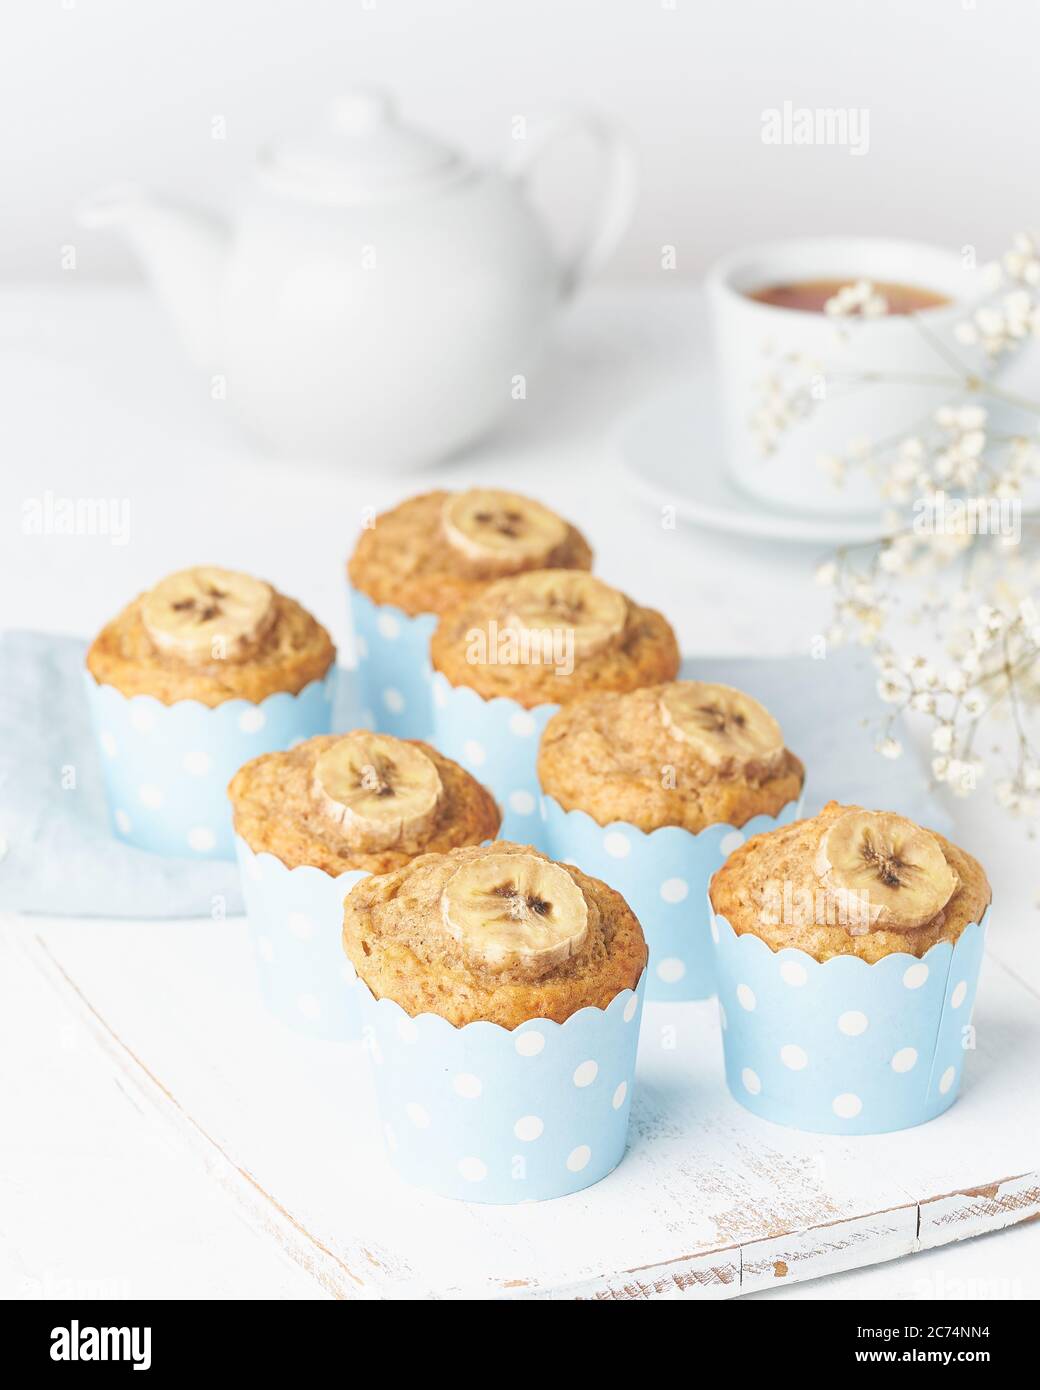 Bananenmuffin, Cupcakes in blauen Kuchenhüllen Papier, weißer Betontisch Stockfoto